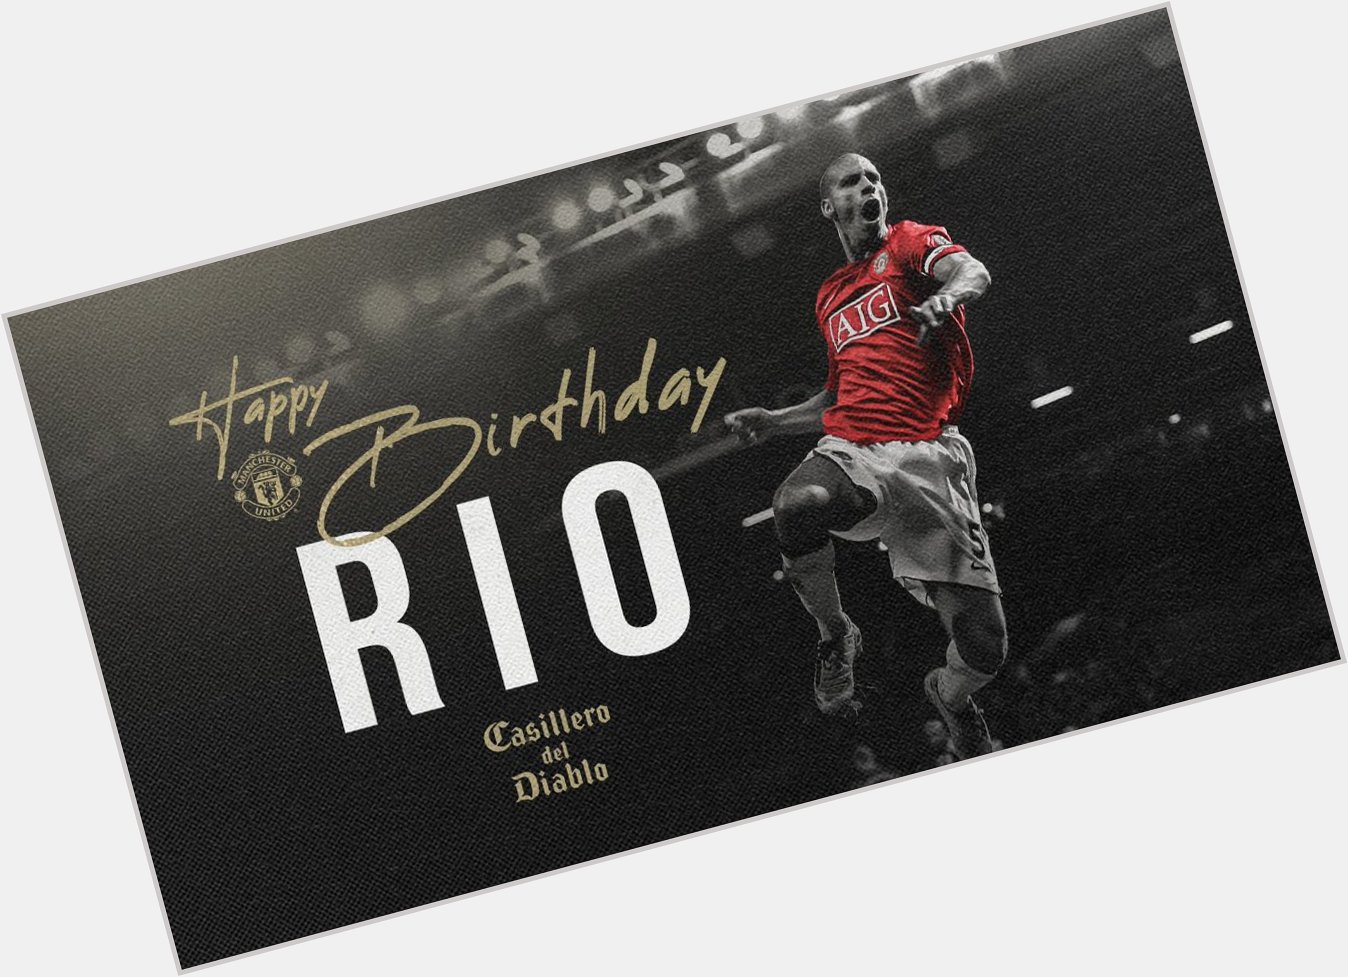  Ook Rio Ferdinand is vandaag jarig. Hij is 42 jaar geworden. Happy birthday,  